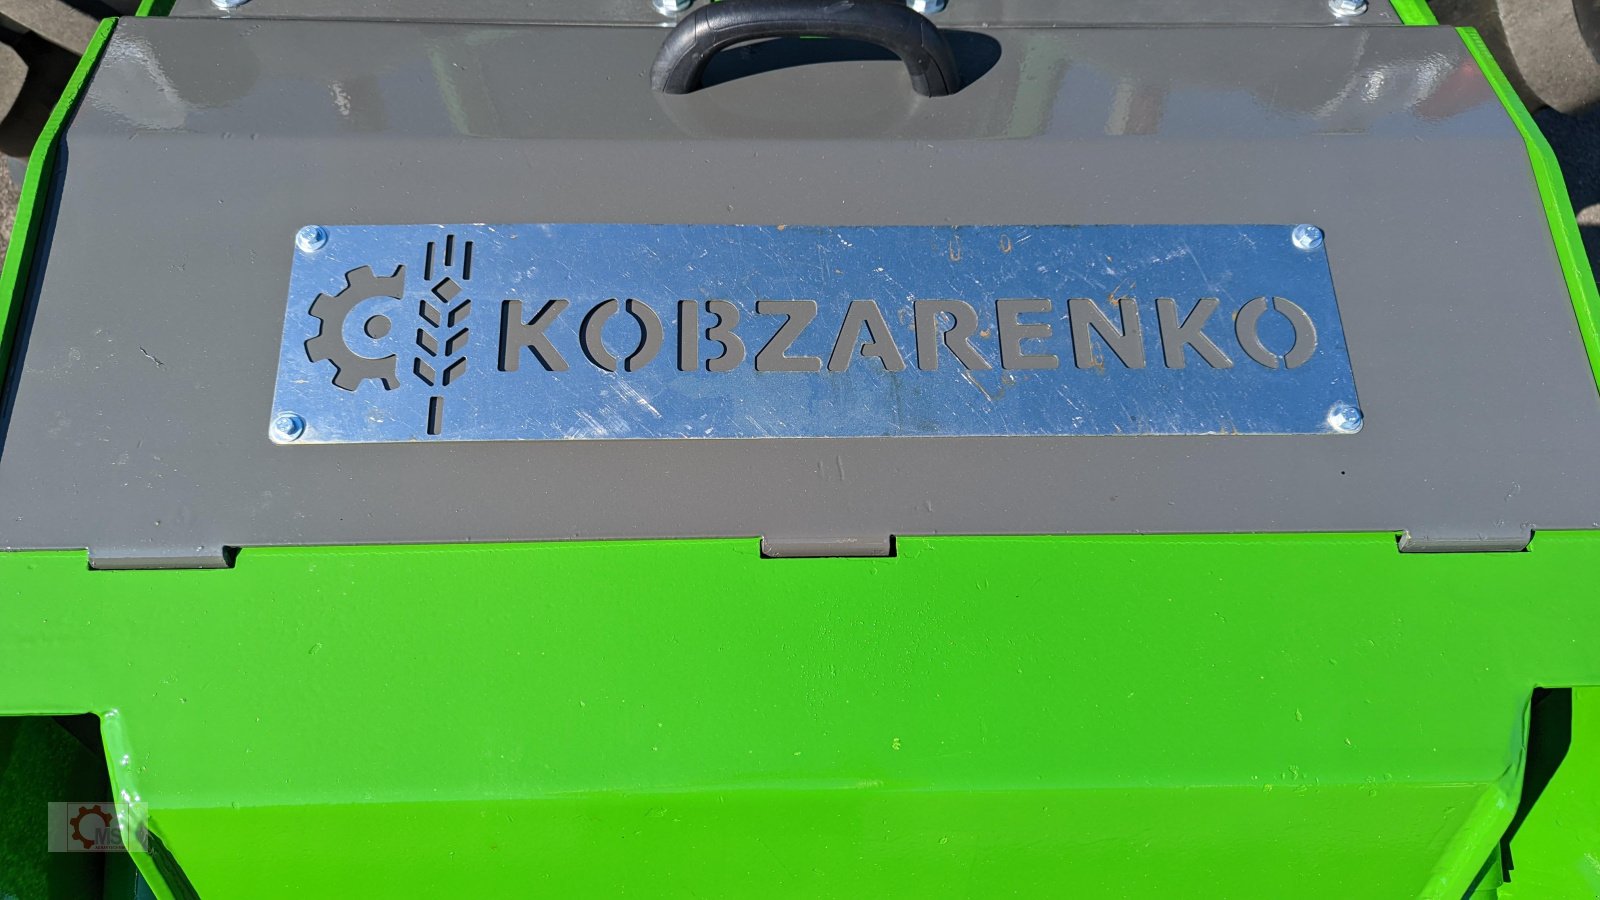 Forstfräse & Forstmulcher des Typs Kobzarenko Forstmulcher 2,5m Drückevorrichtung Häckselklappe, Neumaschine in Tiefenbach (Bild 11)